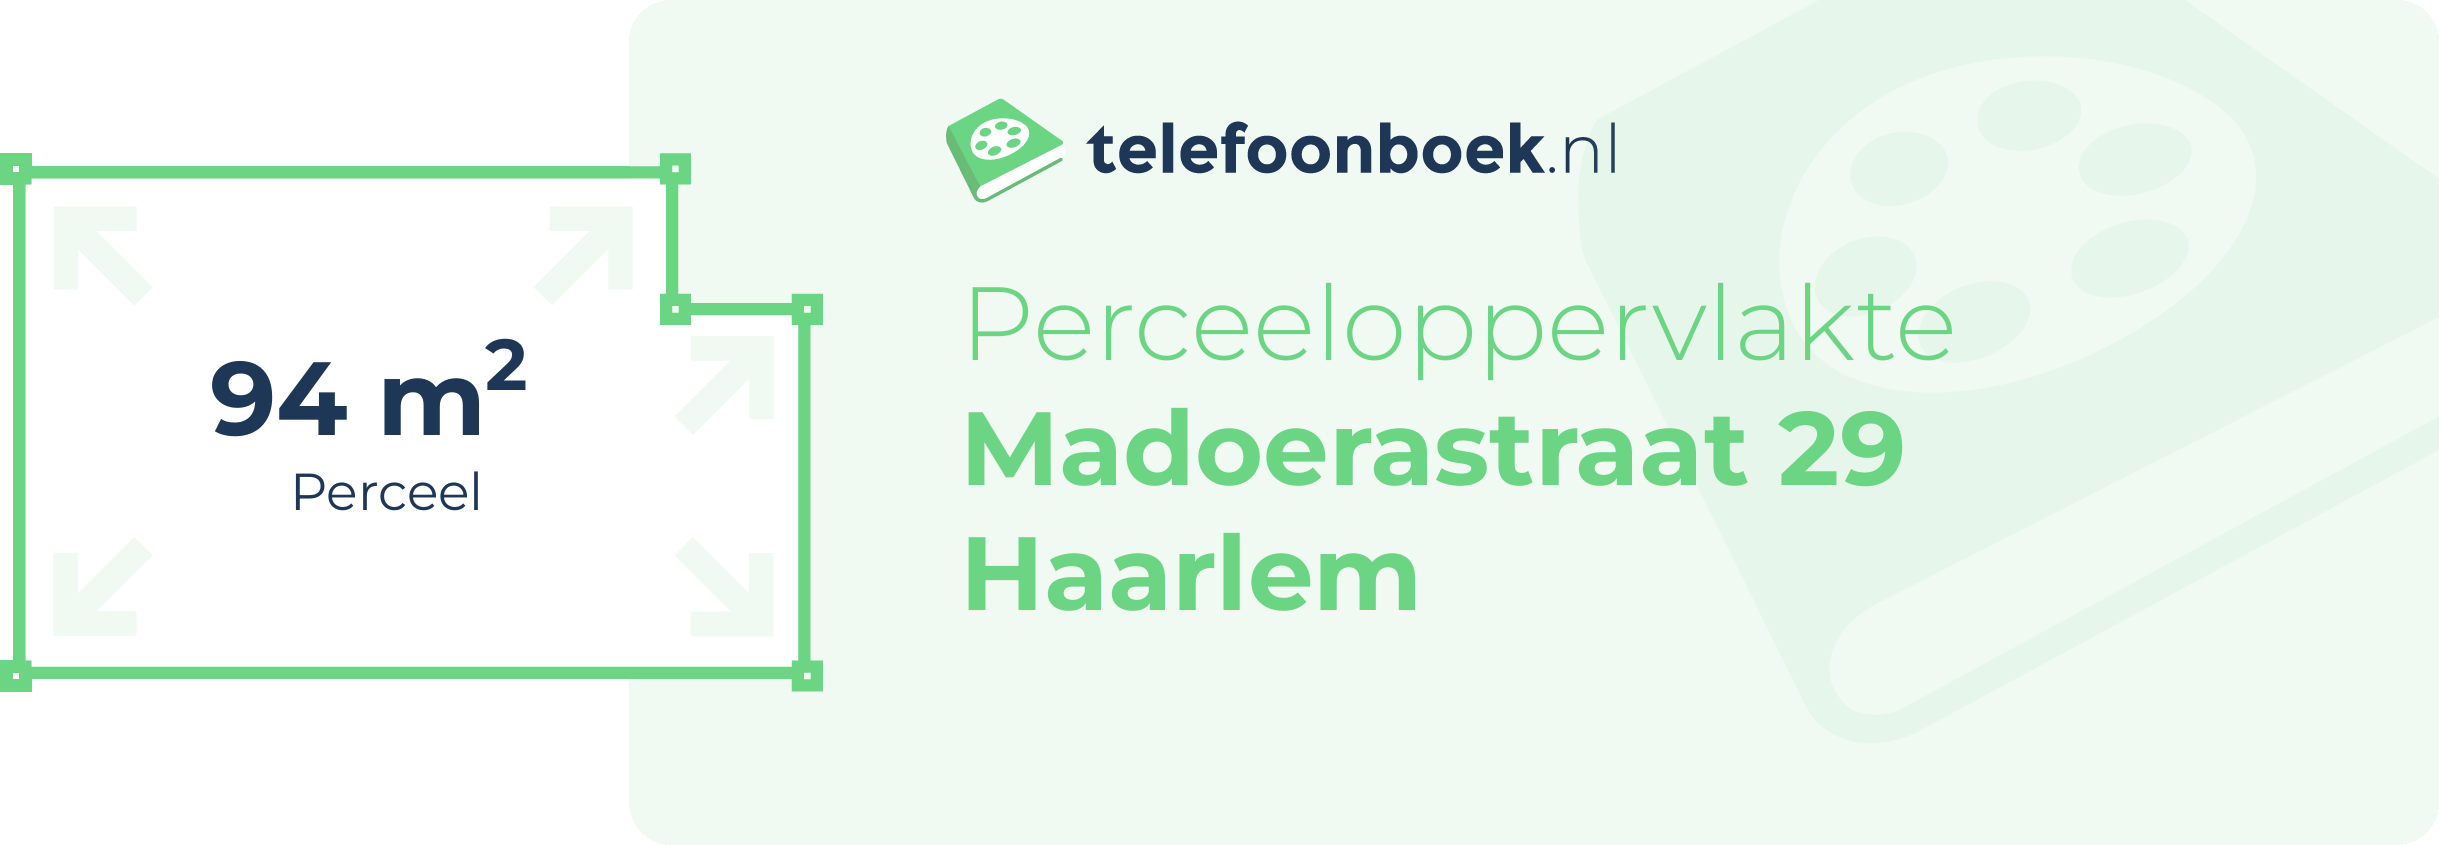 Perceeloppervlakte Madoerastraat 29 Haarlem